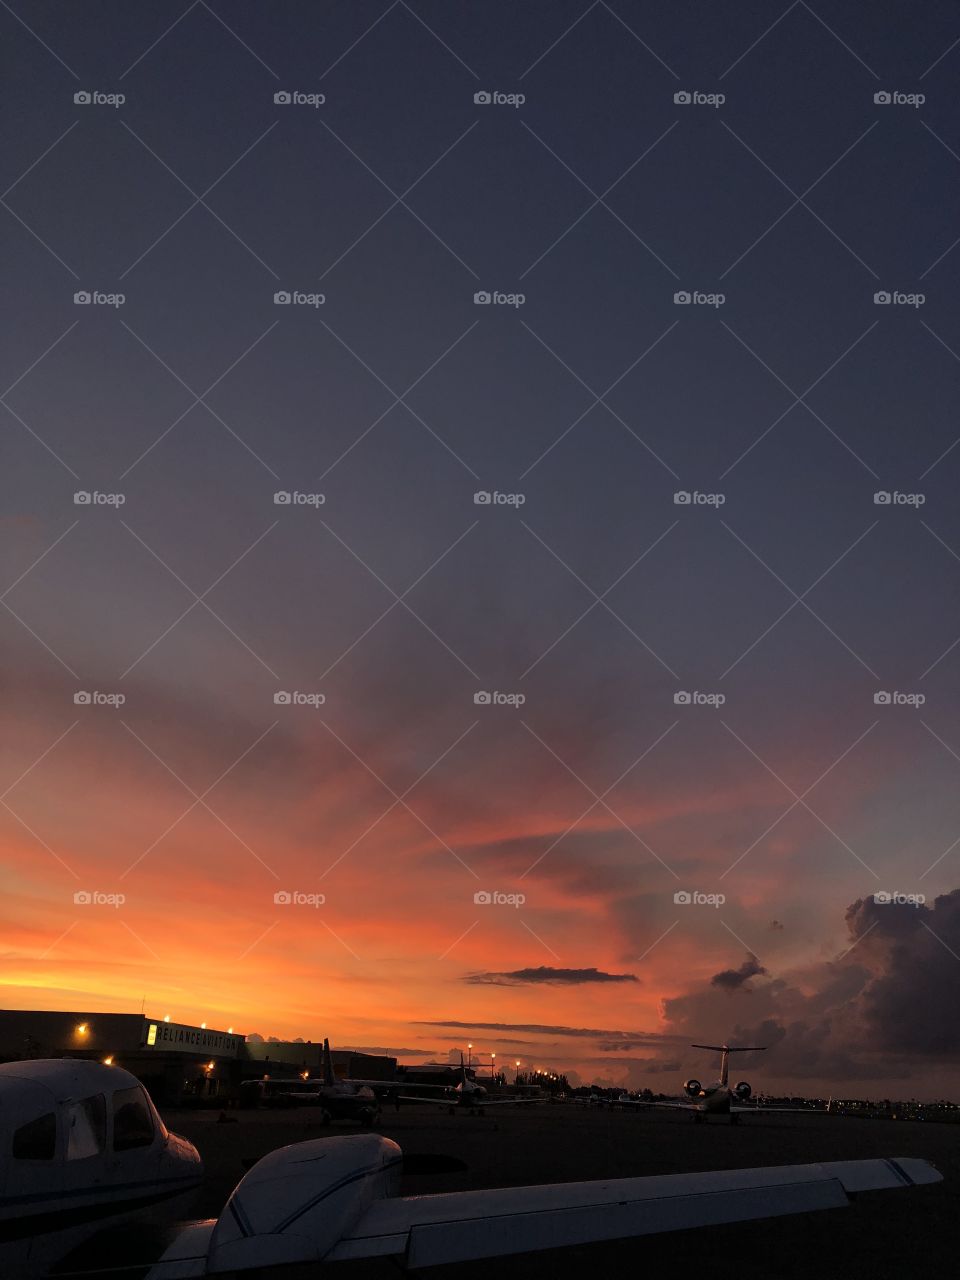 Sunrise at Tamiami airport 🌅